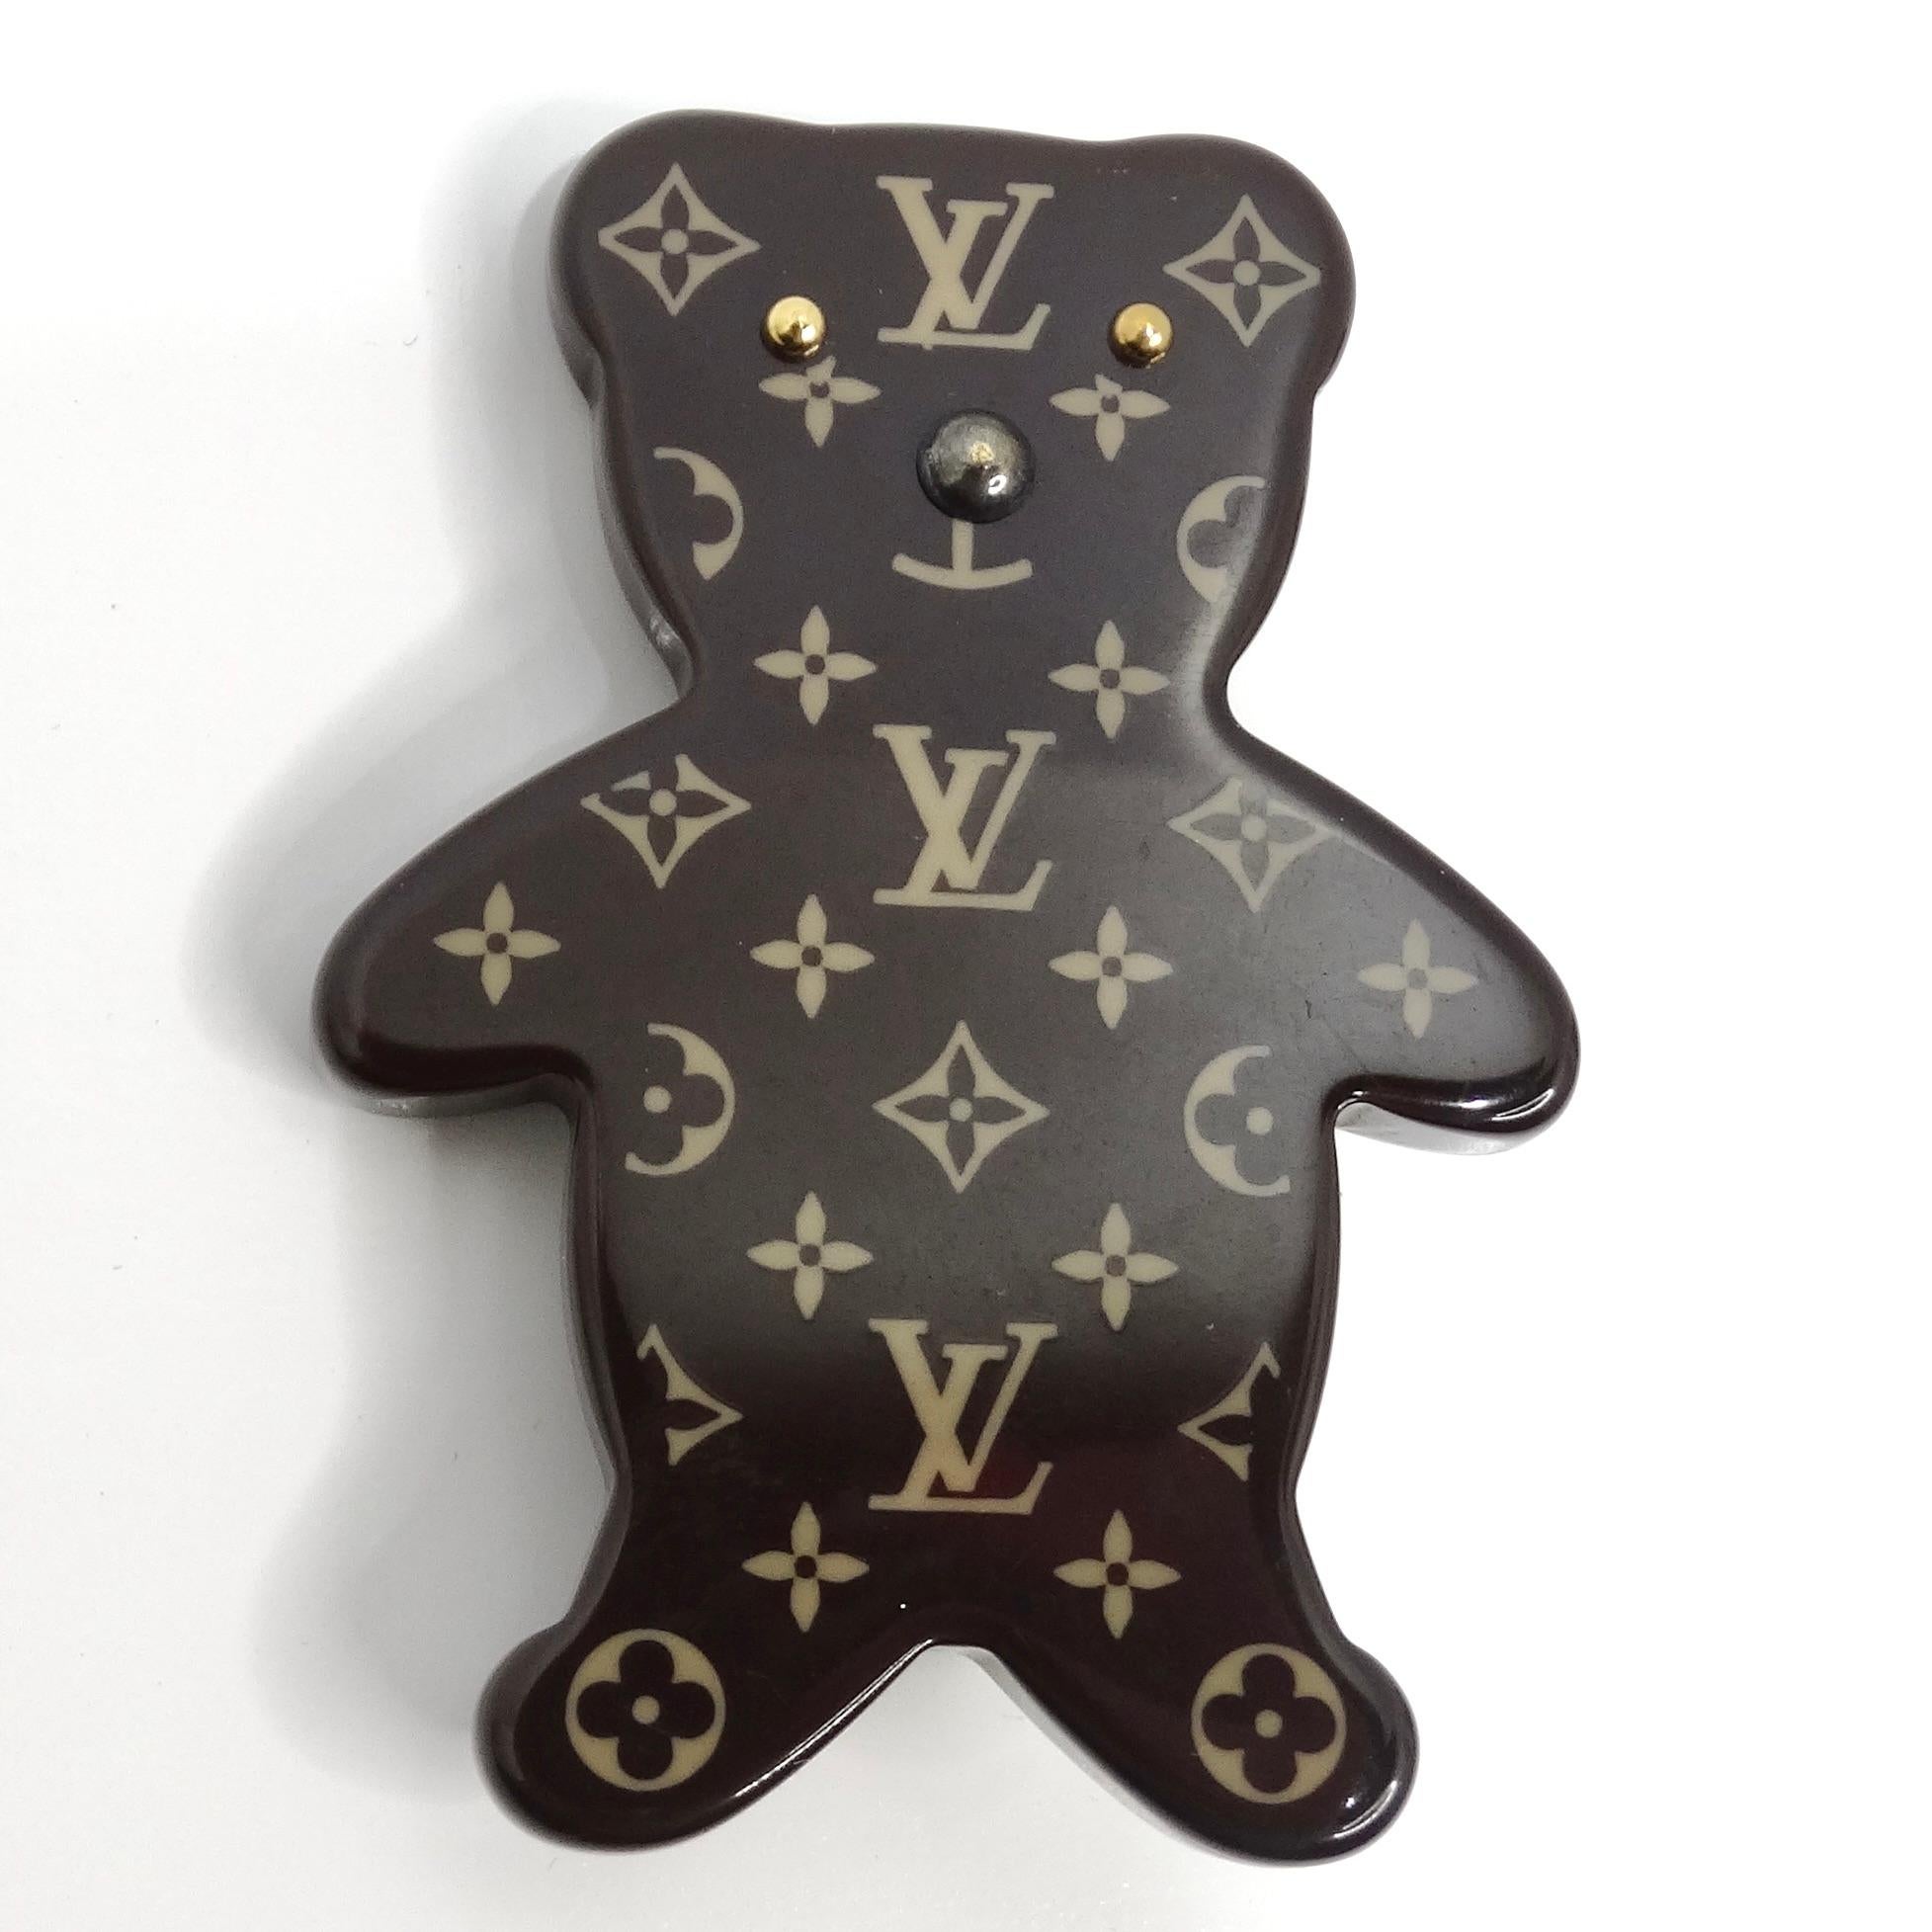 Die bezaubernde Louis Vuitton Monogram Teddybär-Brosche ist ein verspieltes und luxuriöses Accessoire, das jedem Ensemble einen Hauch von Laune verleiht. Diese niedliche Brosche aus hochwertigem Harz ist in Form eines Teddybären gestaltet und zeigt